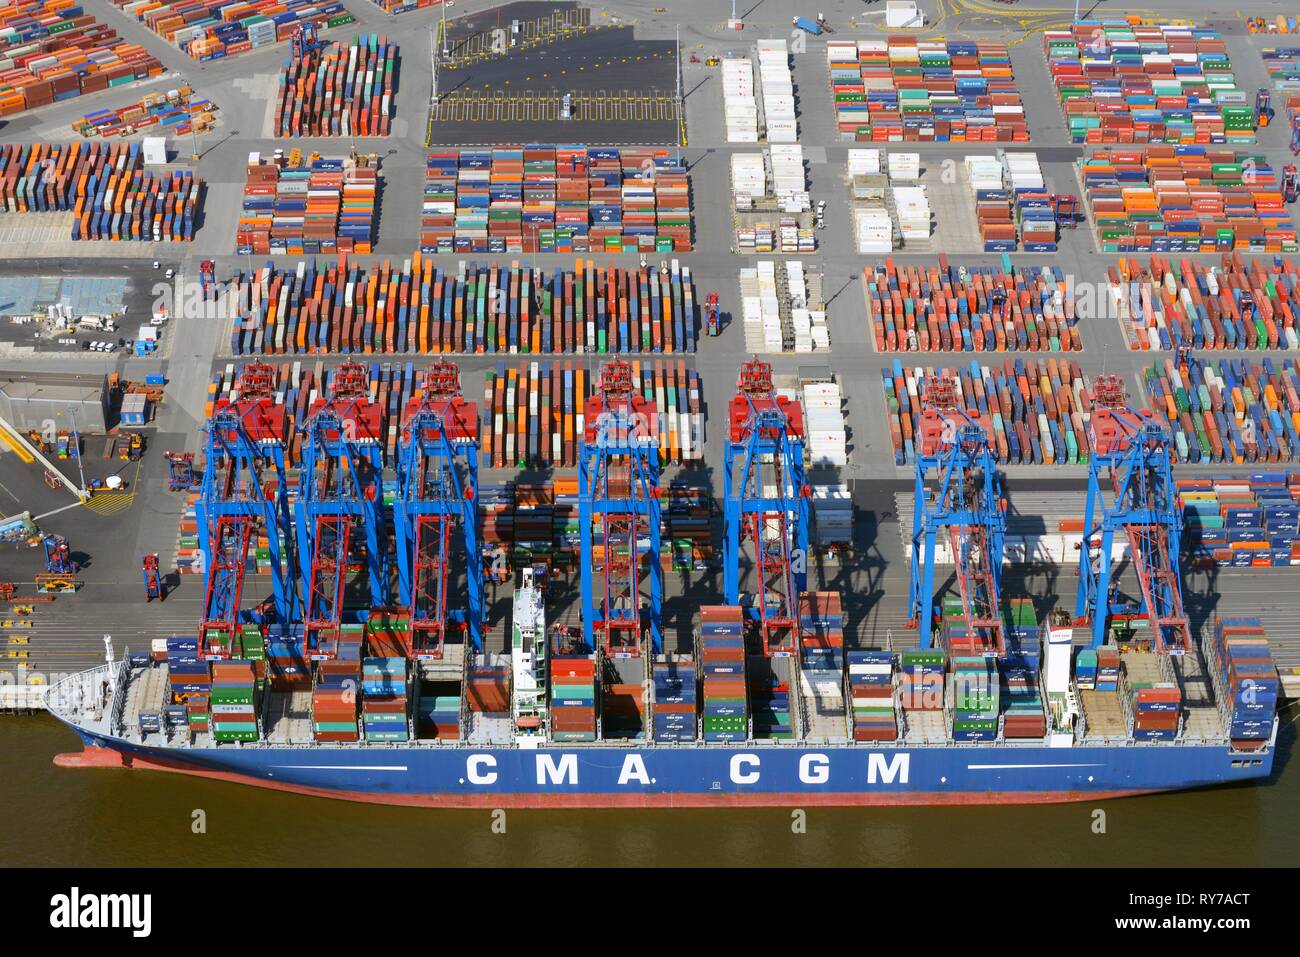 Buque portacontenedores CMA CGM en el puerto de contenedores, carga de contenedores, Hamburgo, Alemania. Foto de stock